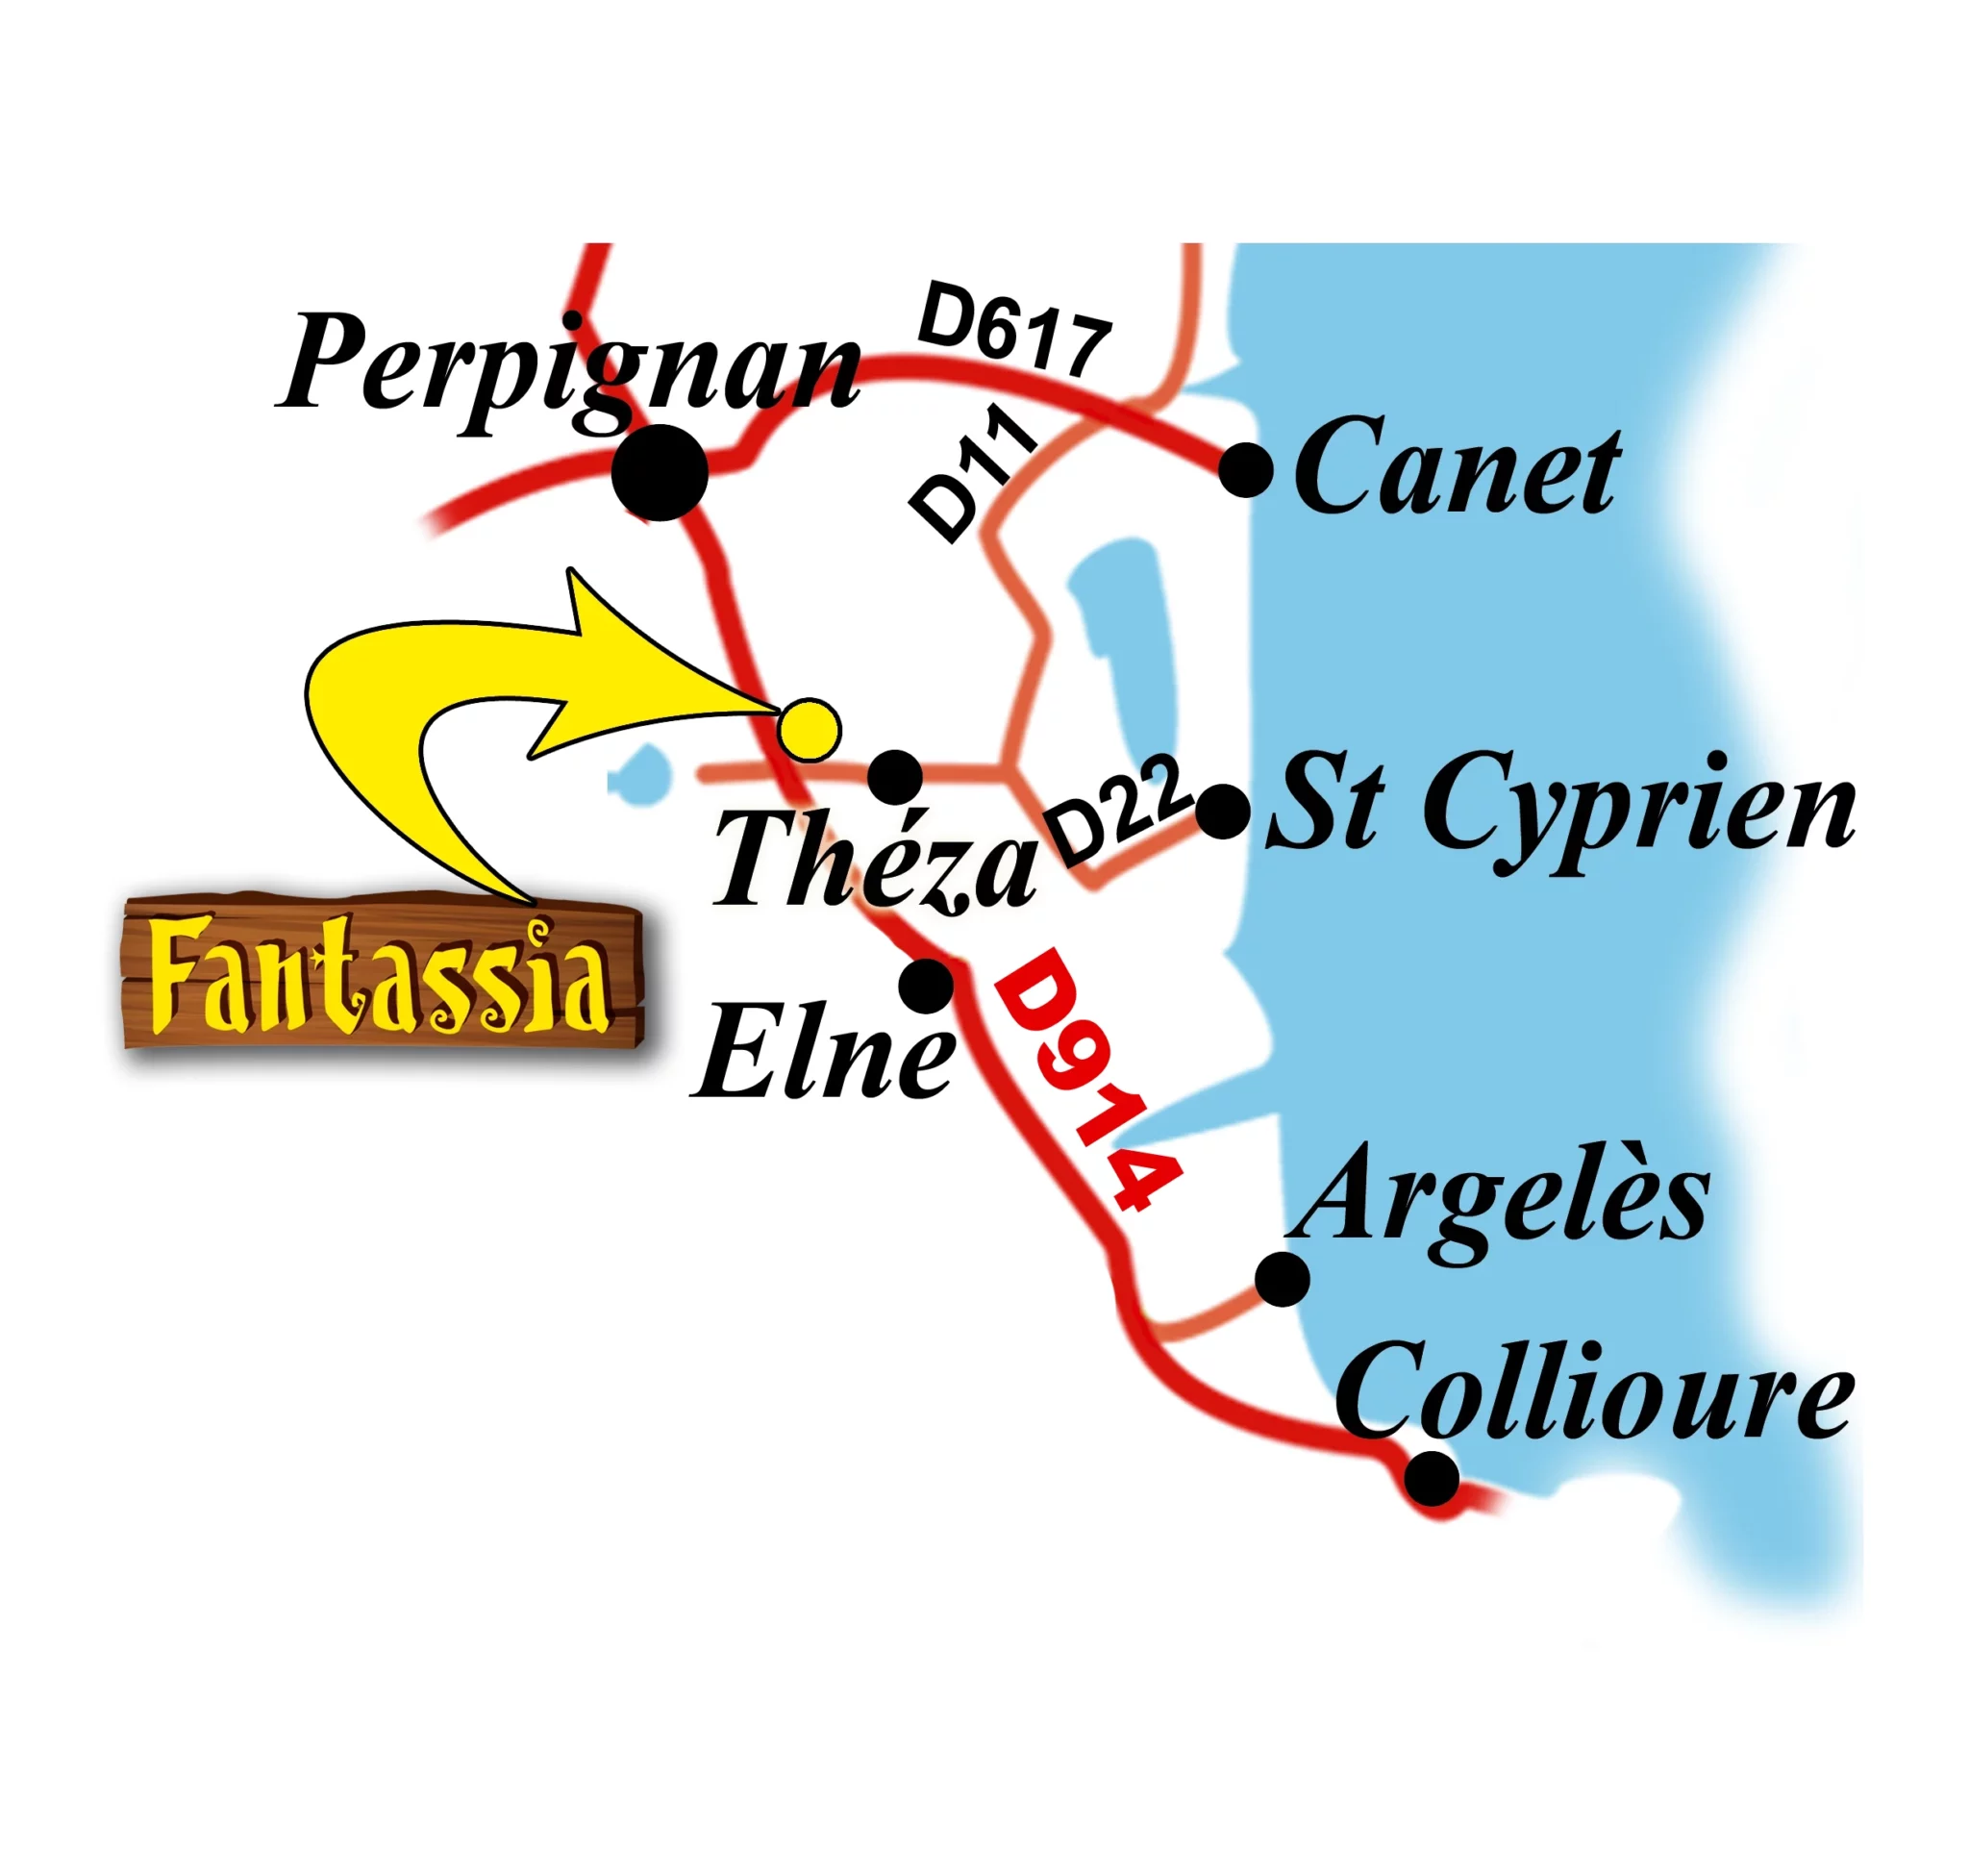 Plan détaillé d'accès au parc d'attractions Fantassia situé à Théza